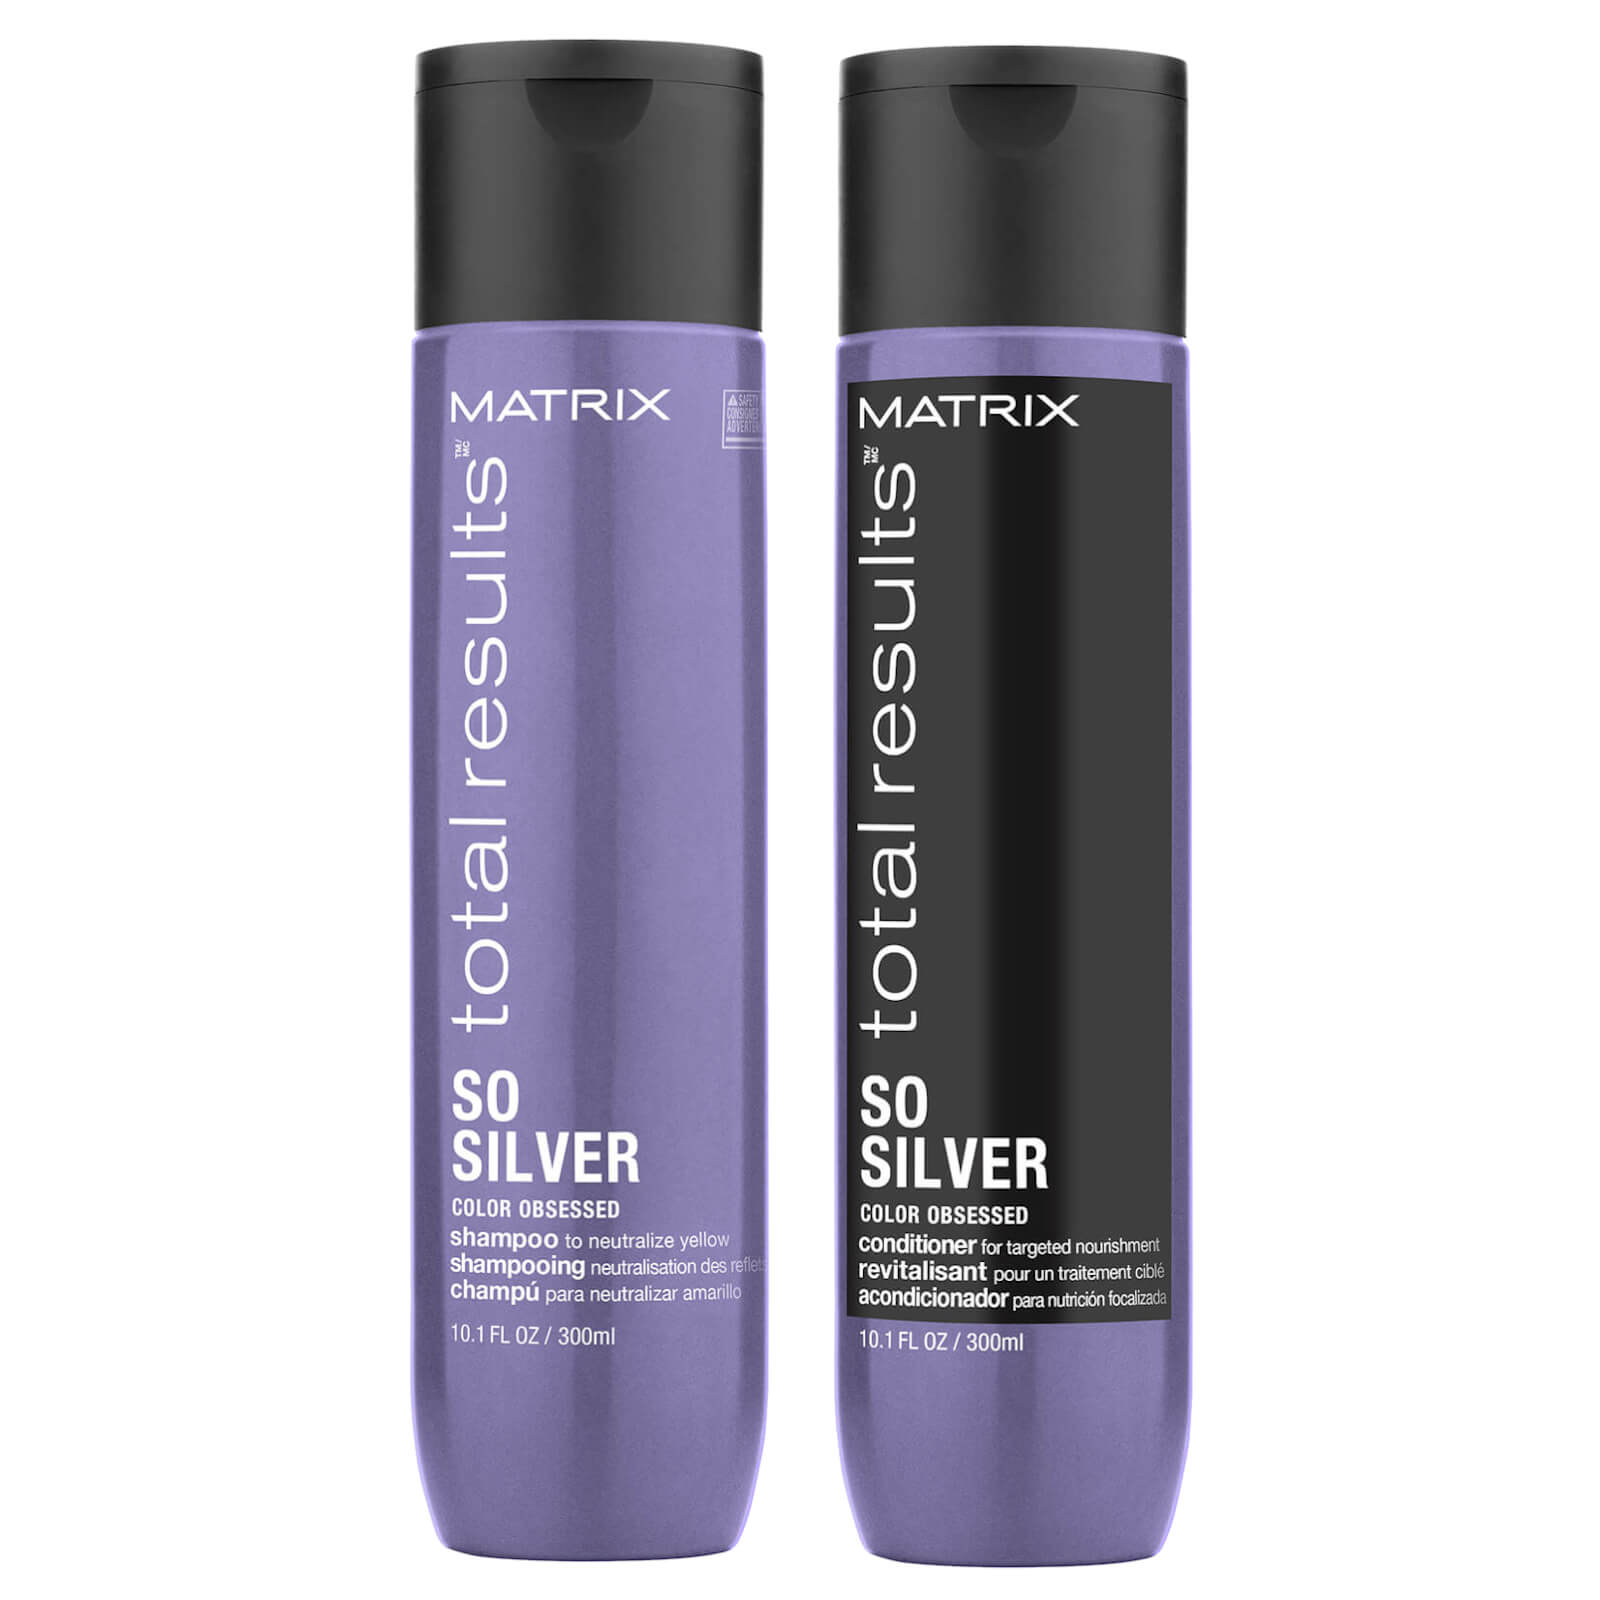 Matrix So Silver shampoo and conditioner 300ml